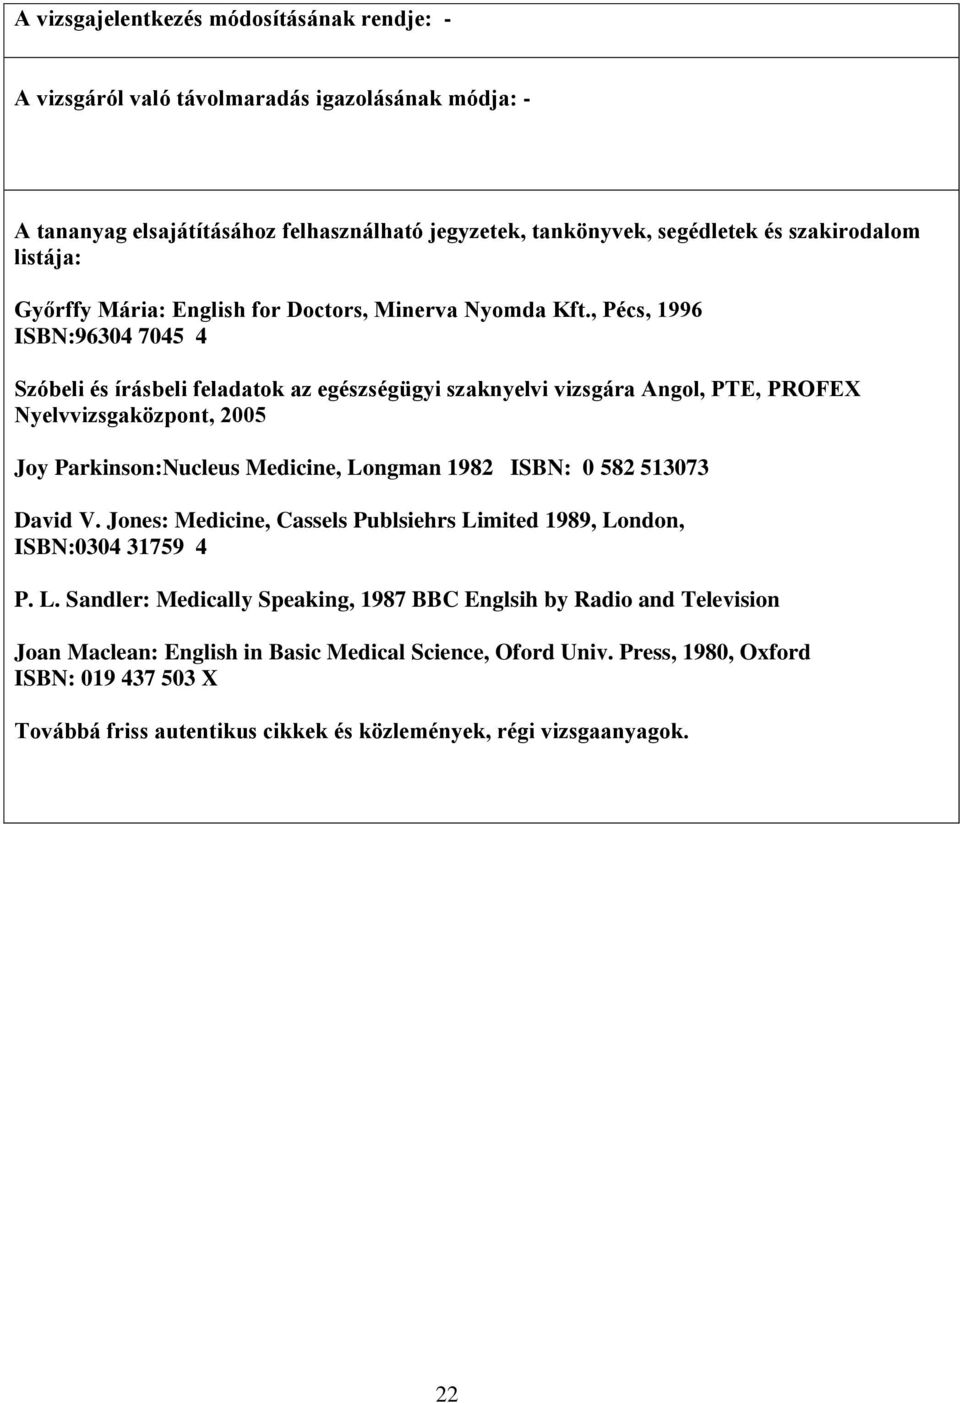 , Pécs, 1996 ISBN:96304 7045 4 Szóbeli és írásbeli feladatok az egészségügyi szaknyelvi vizsgára Angol, PTE, PROFEX Nyelvvizsgaközpont, 2005 Joy Parkinson:Nucleus Medicine, Longman 1982 ISBN: 0